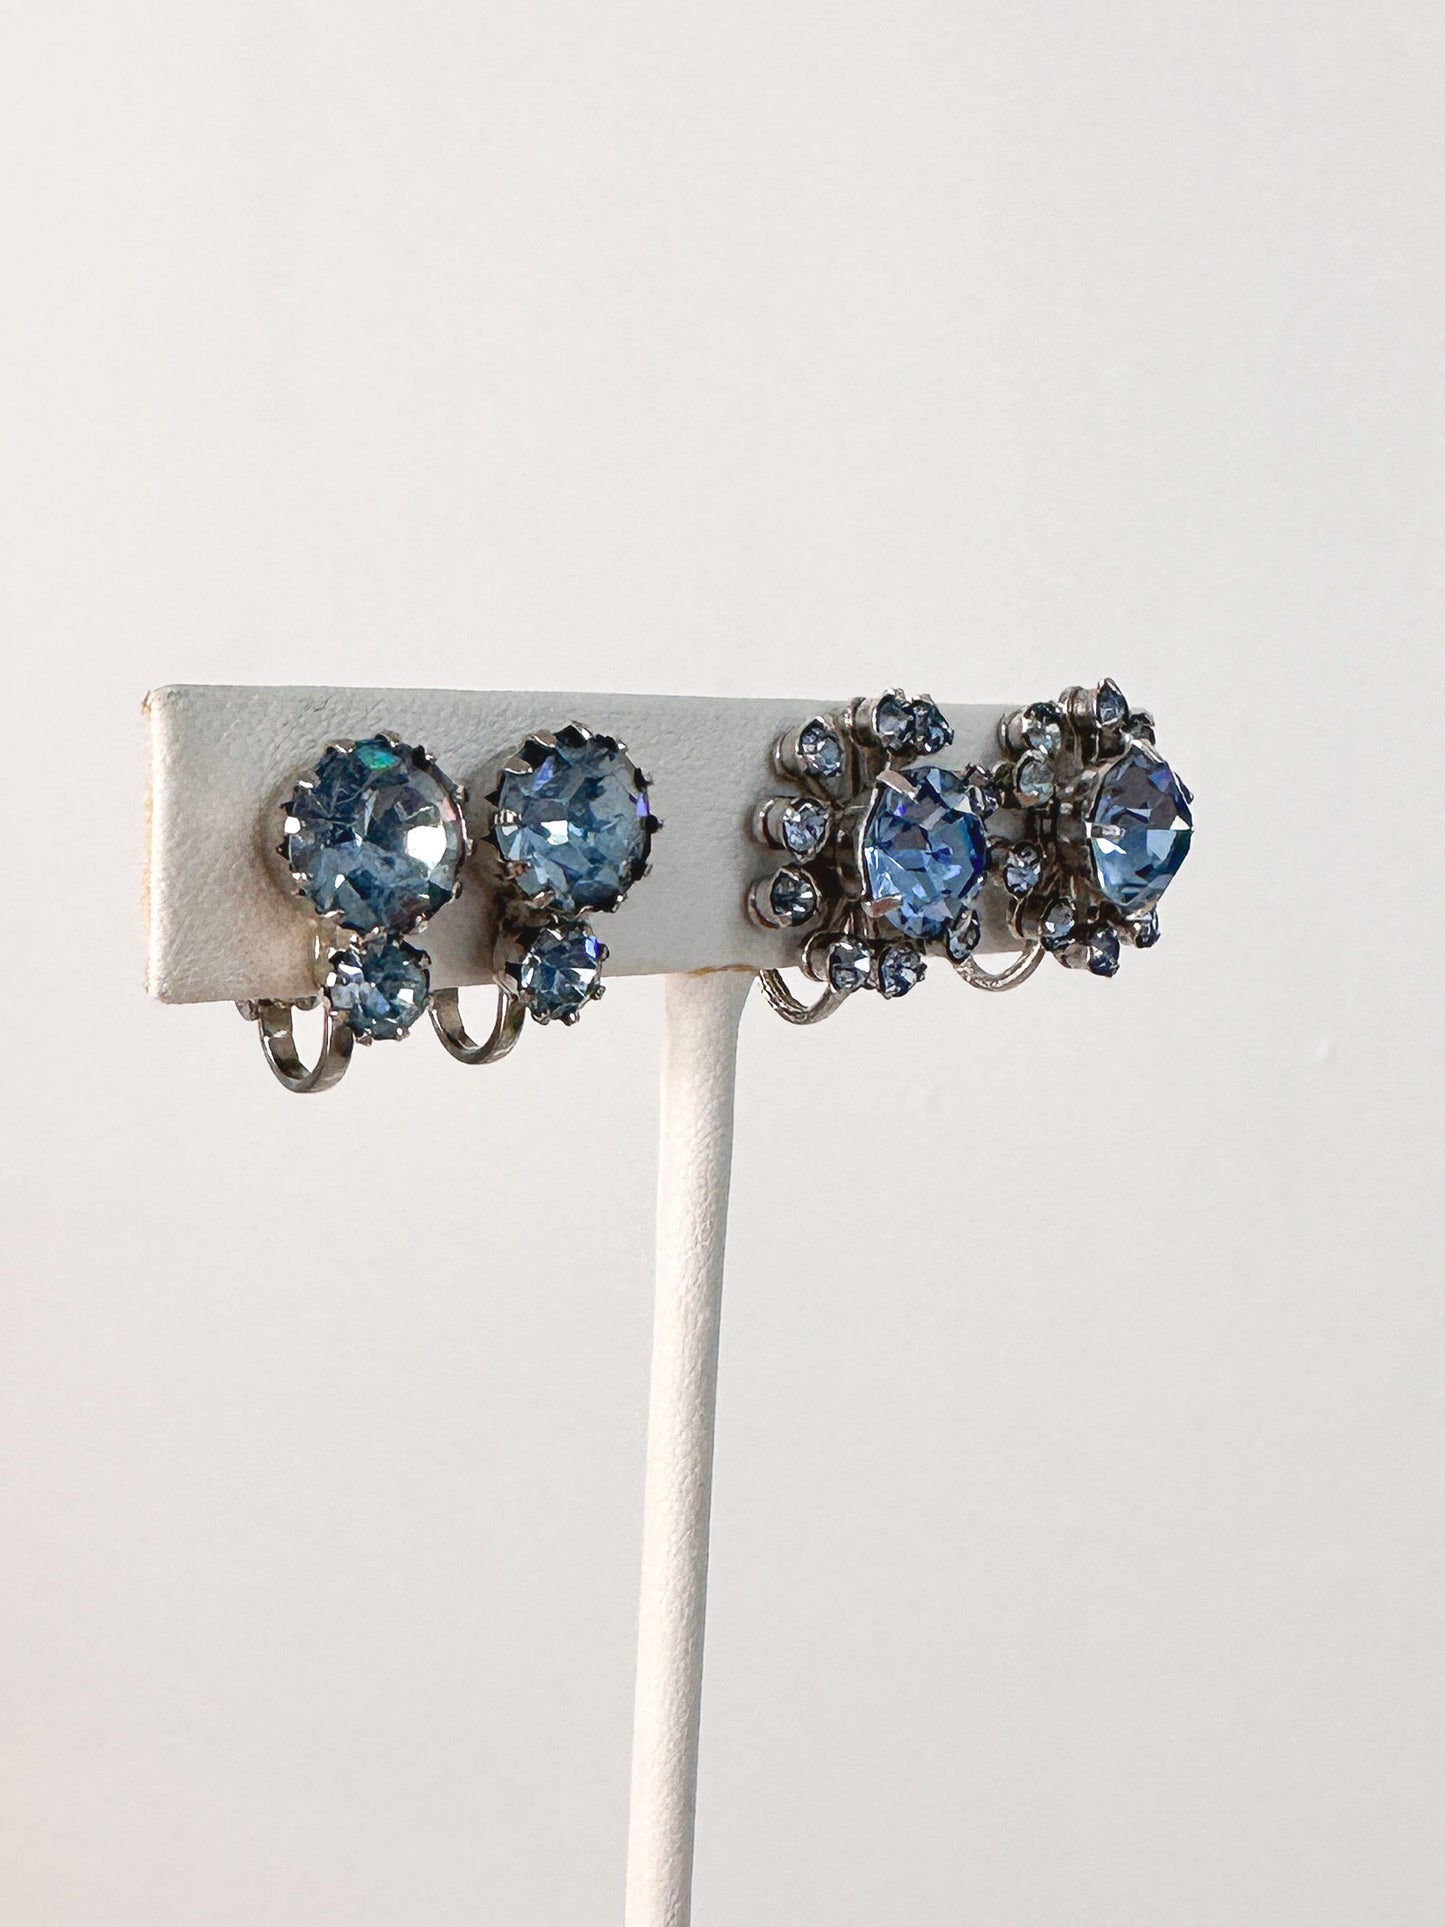 1950s Blue Rhinestone Necklace Set